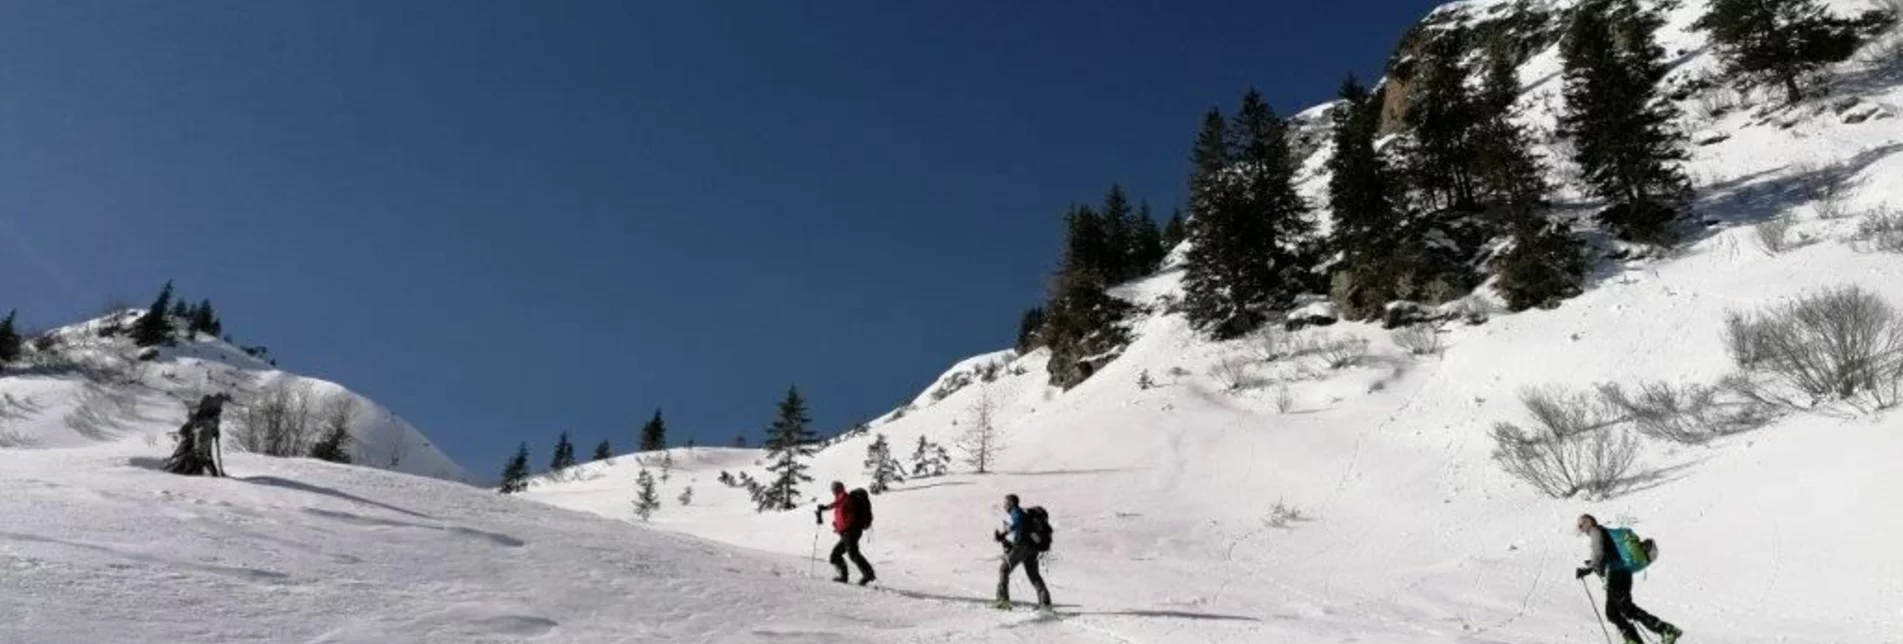 Ski Touring Skitour Blaseneck - Touren-Impression #1 | © TV Gesäuse